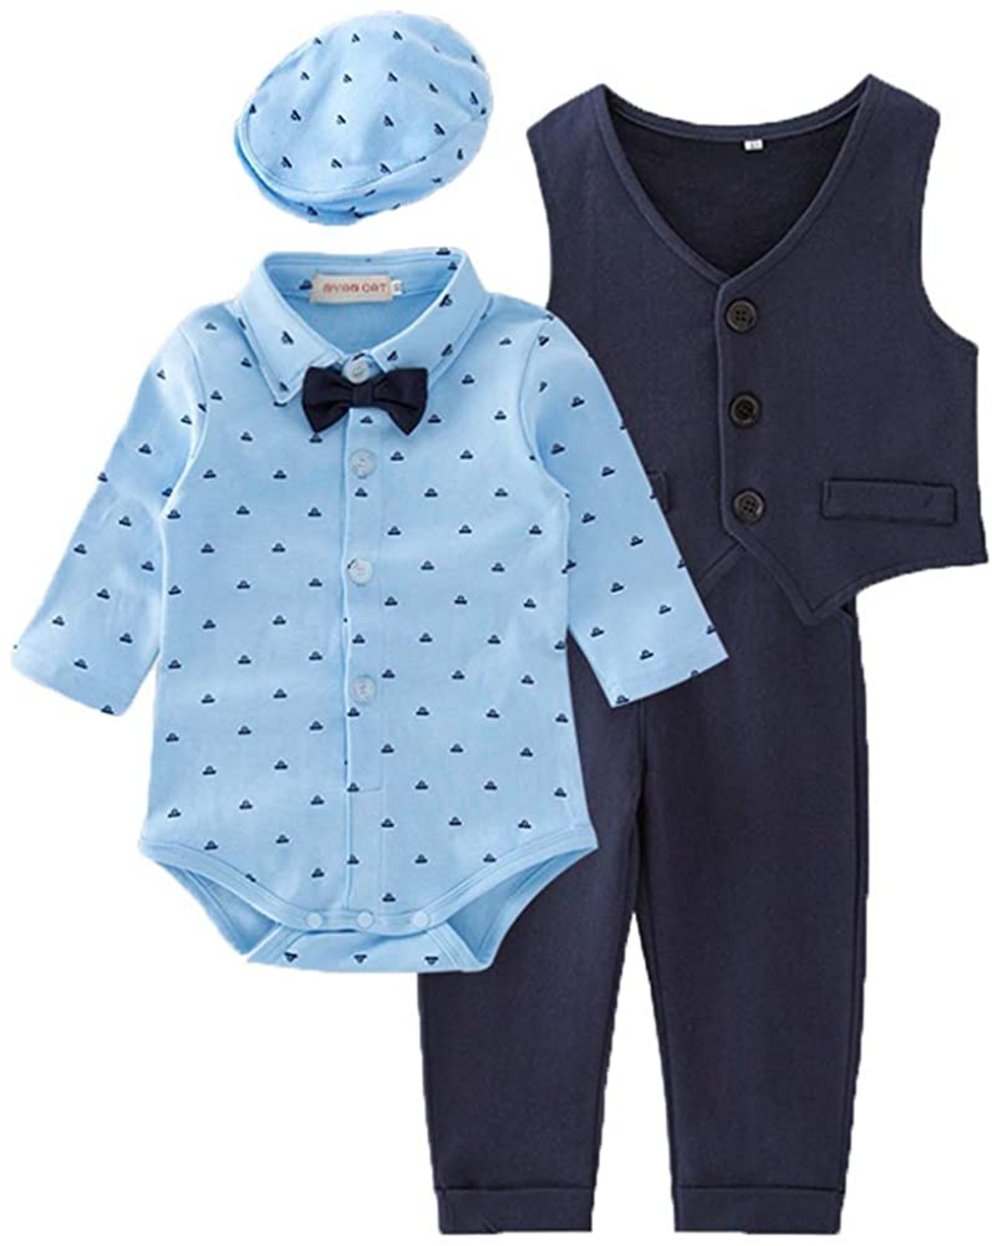 Schöner Taufanzug für Babys als Set aus Baumwolle